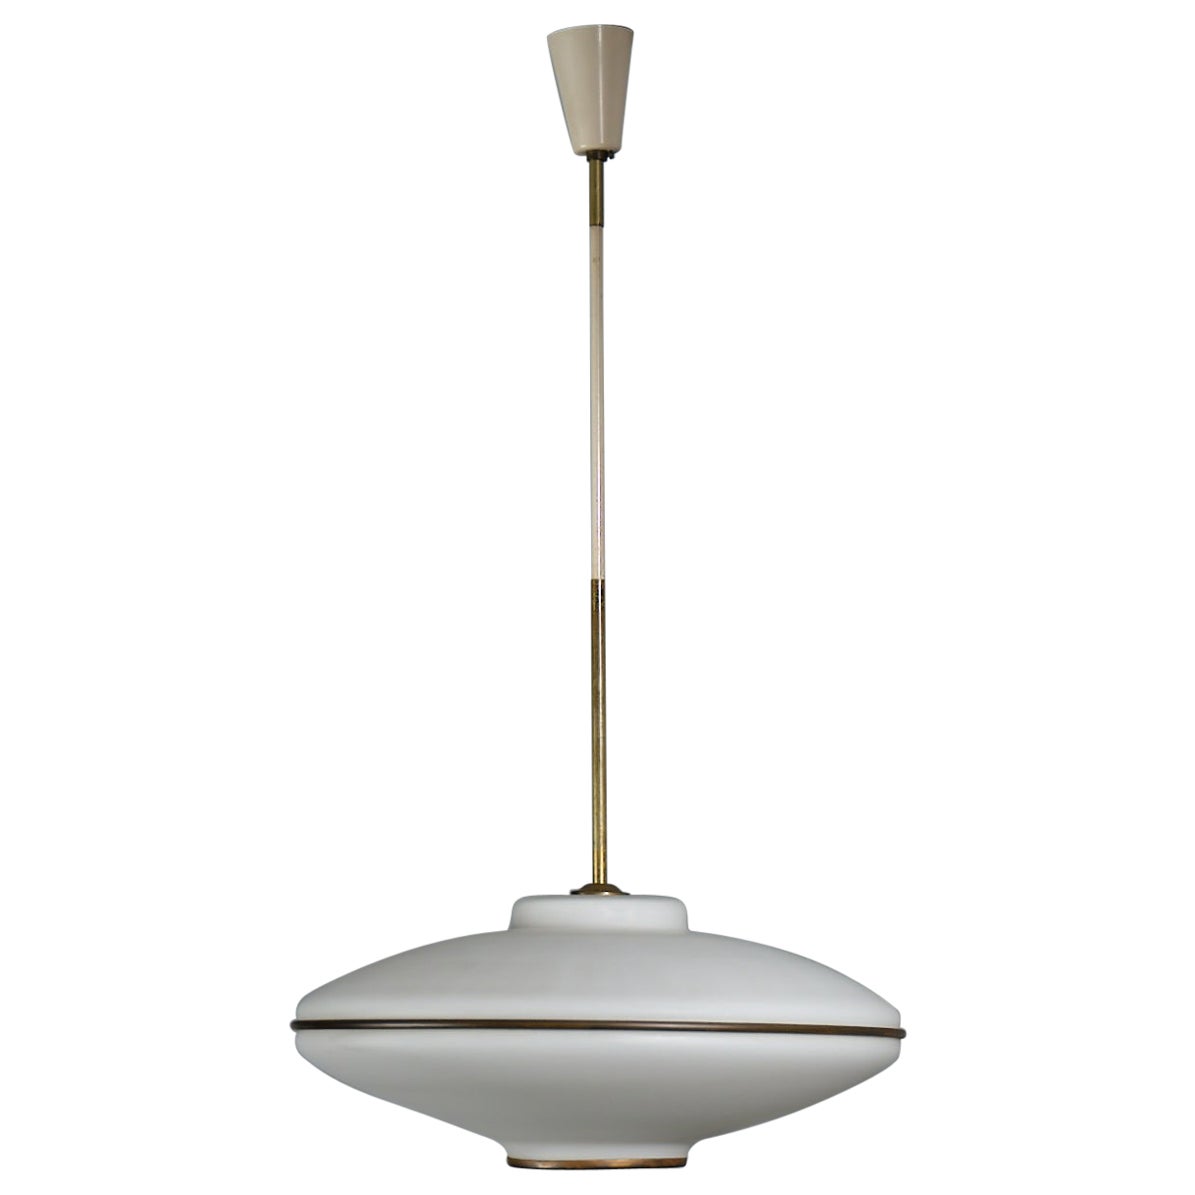 Italian Flying Saucer Pendant Lamp - Vintage 1950s Modernist Ceiling Light For Sale